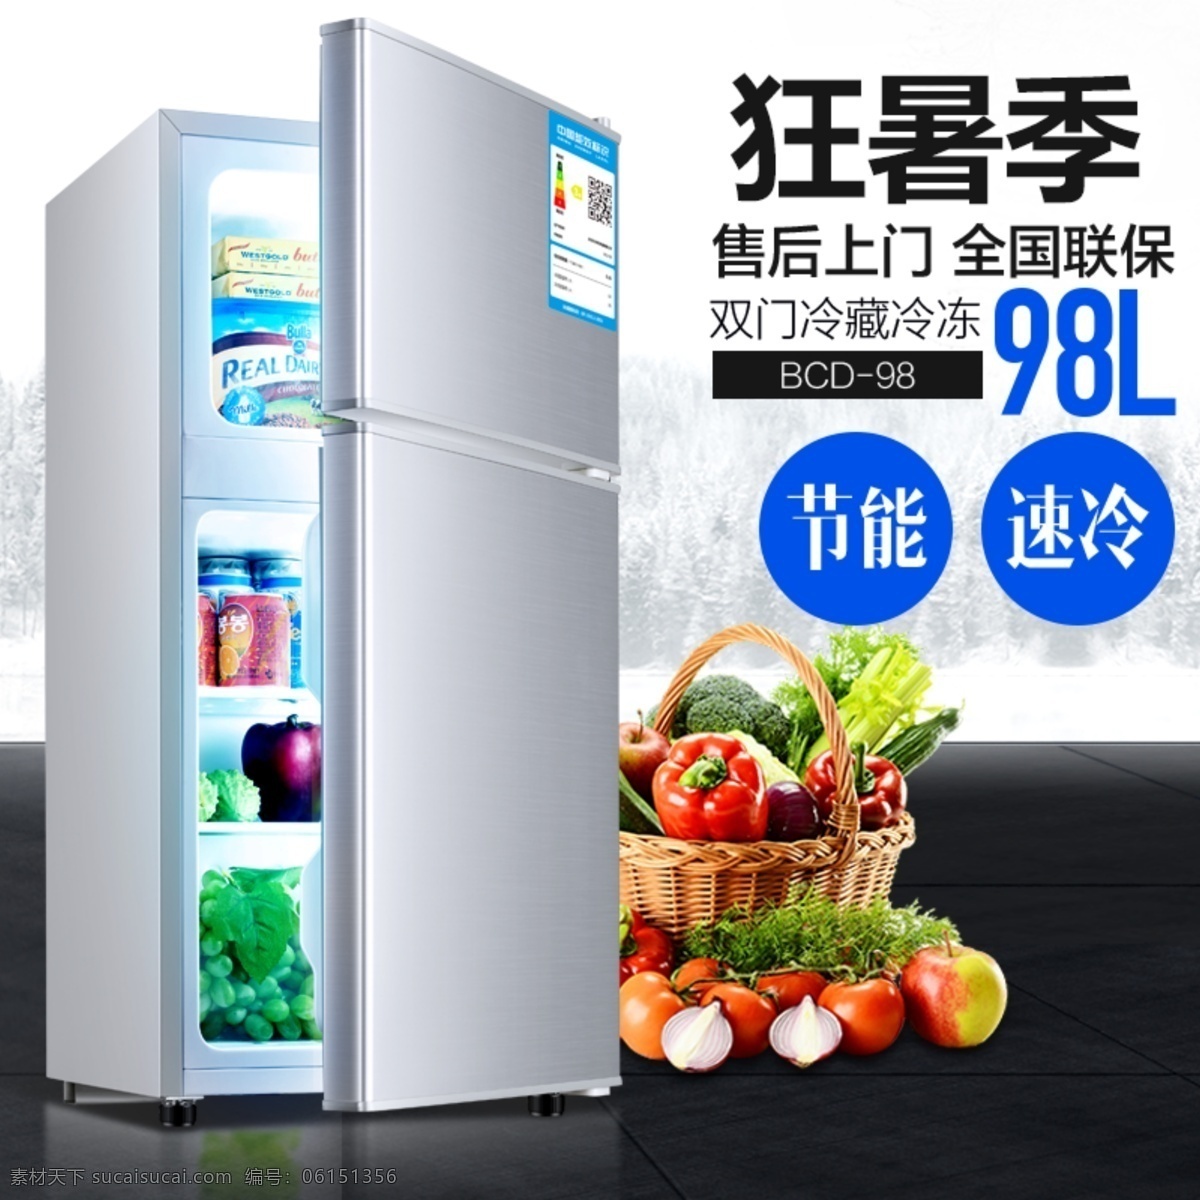 电商 通用 简约 清凉 风格 狂 暑 季 家用电器 小 冰箱 冰箱广告图 淘宝 天猫 主 图 背景 广告